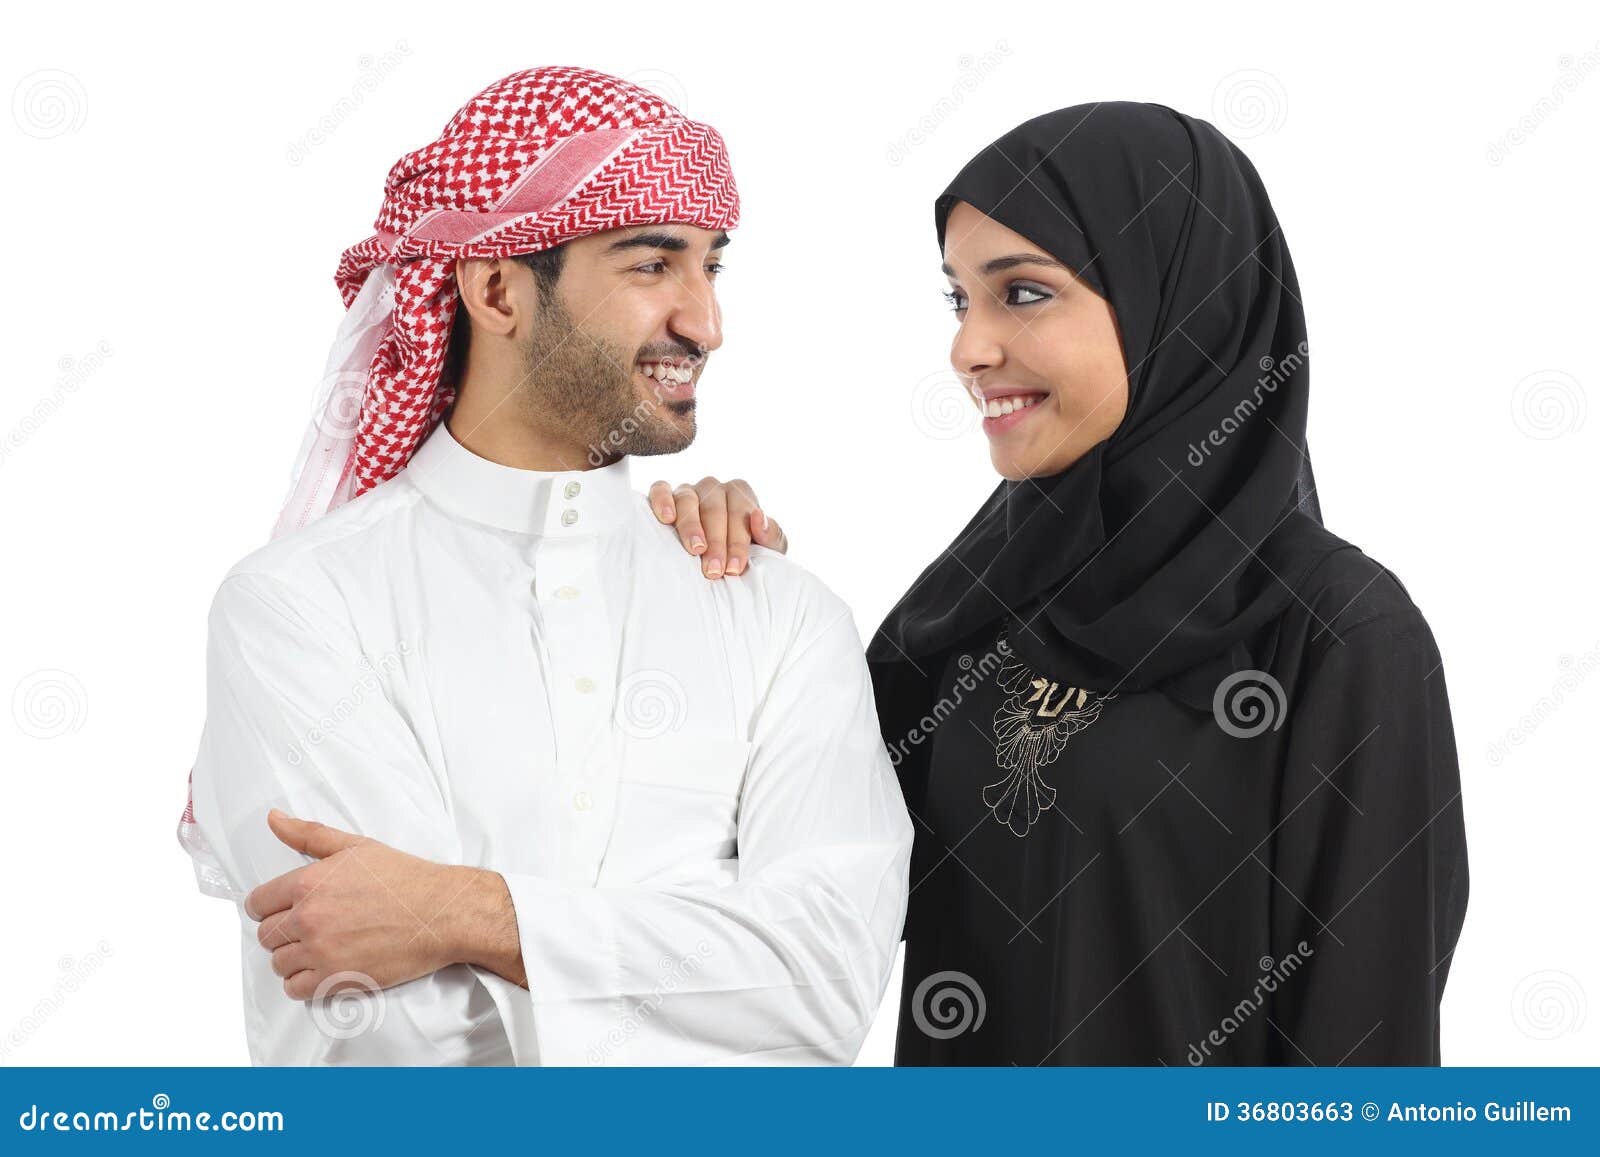 Arabische frauen dating